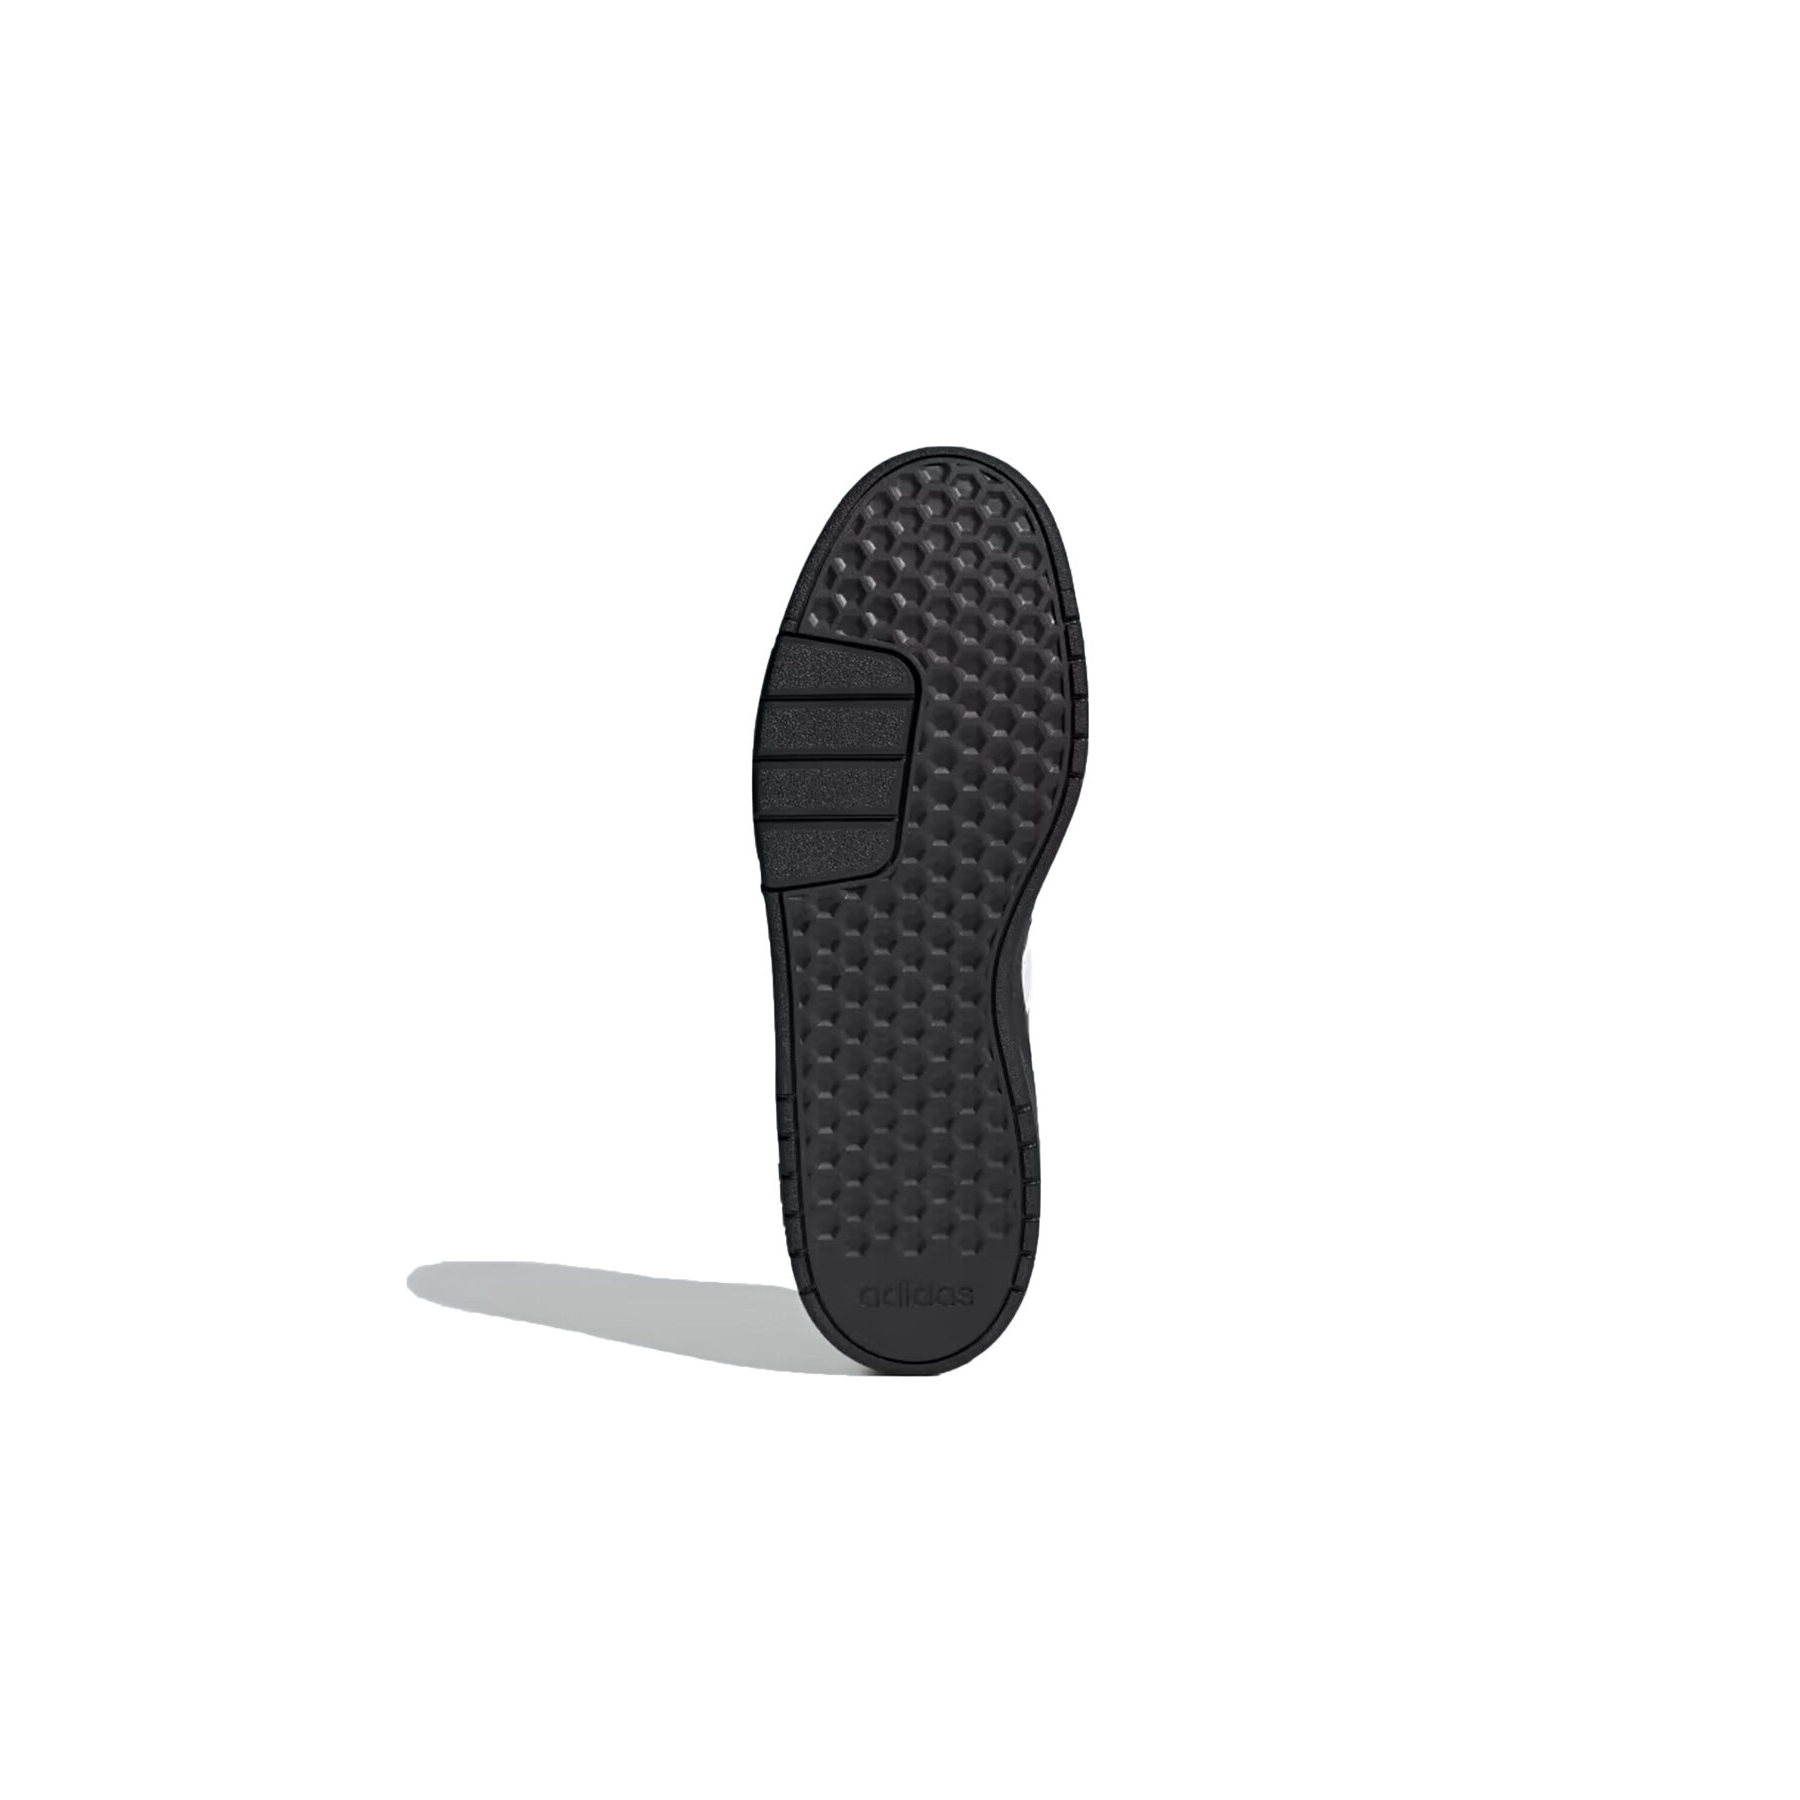 adidas Courtbeat Erkek Siyah Günlük Spor Ayakkabı (ID9660)